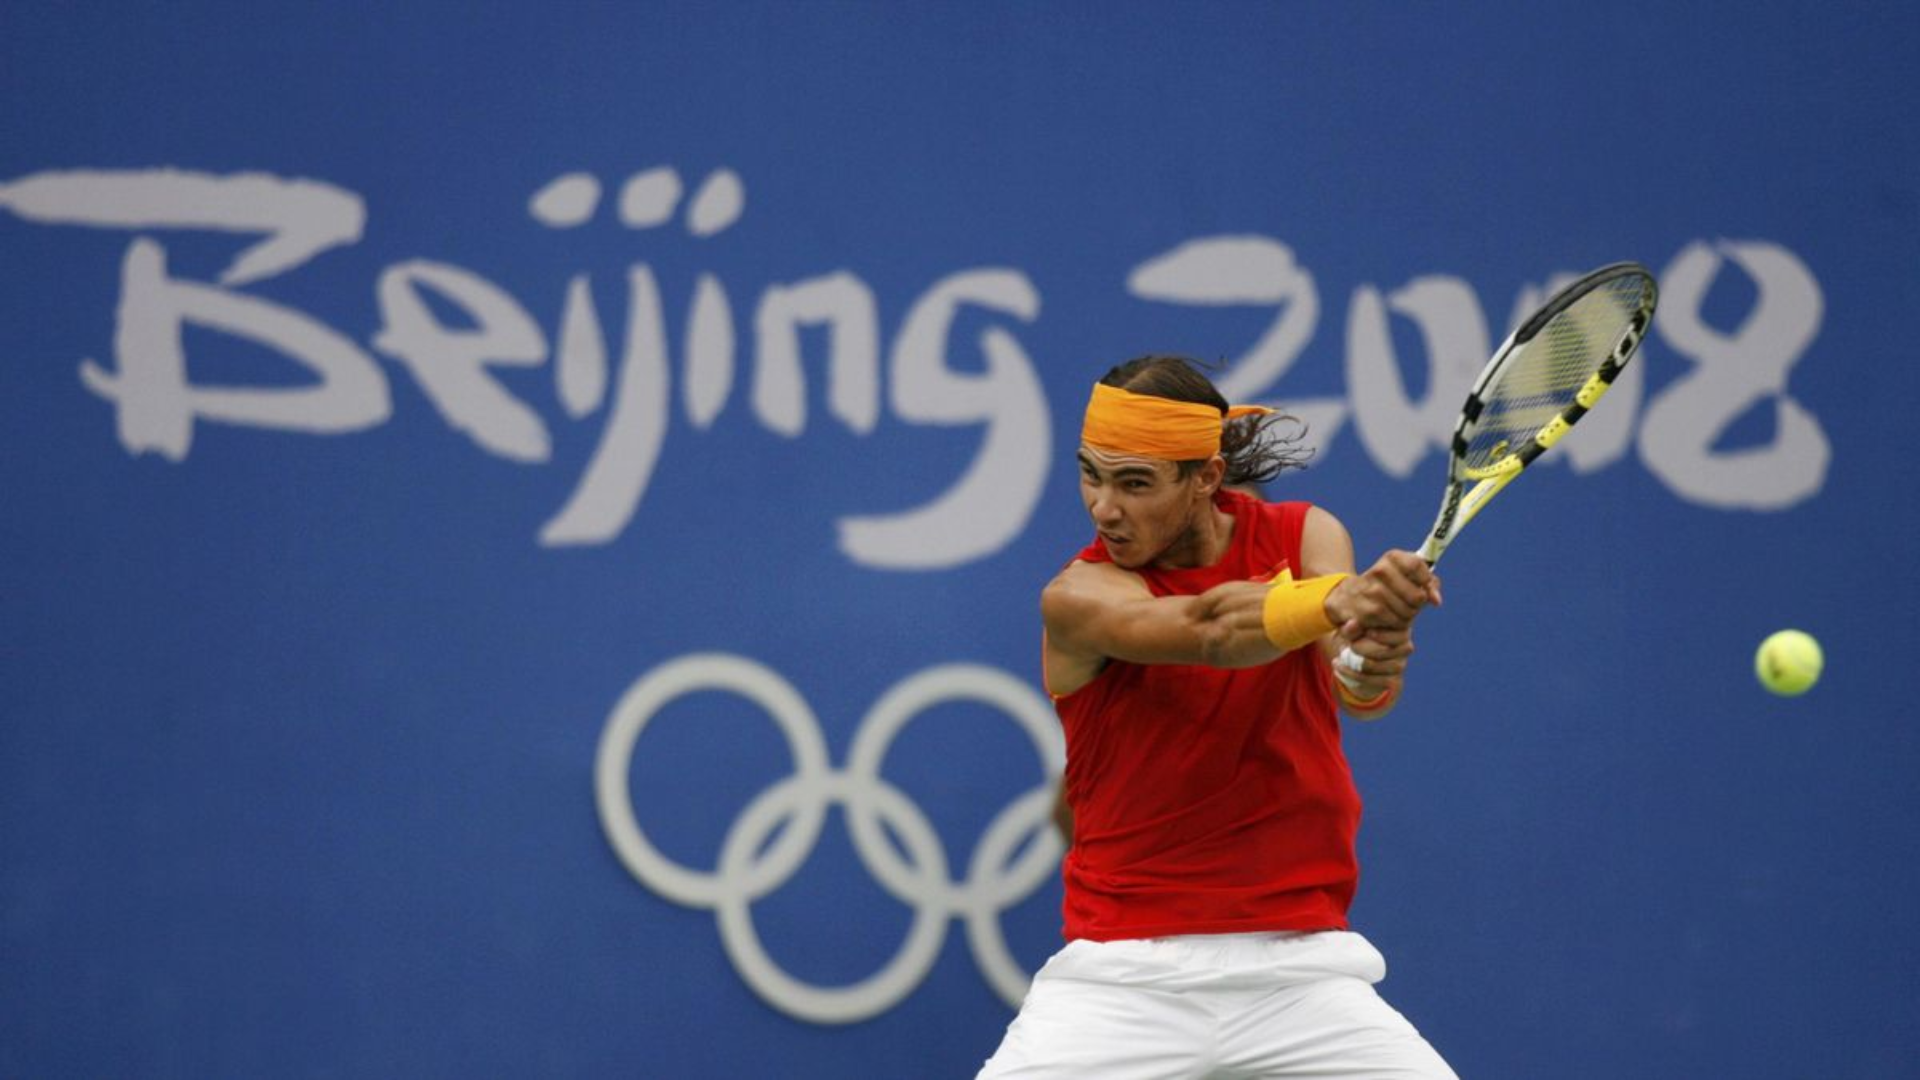 Rafael Nadal, 2008 olimpiyat oyunlarında mücadele ederken çekilmiş bir görseli.